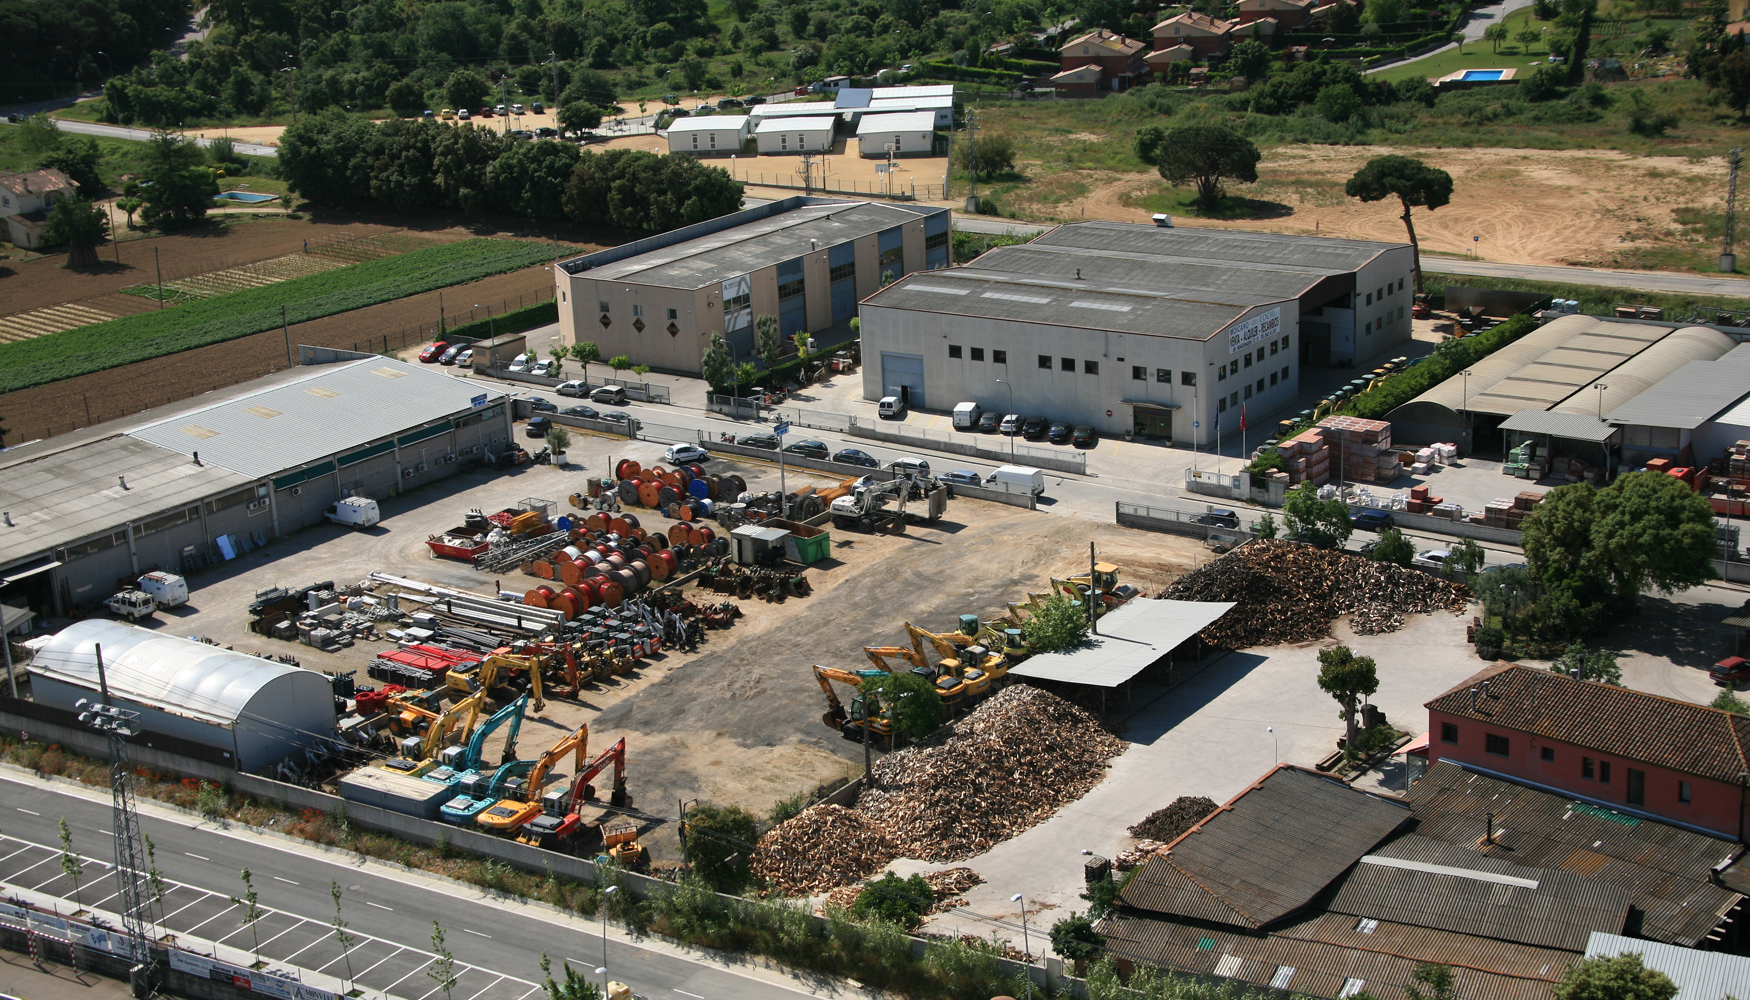 En sus instalaciones, el Grupo Moicano Rent cuenta con una completa flota de maquinaria lista para alquilar a los clientes...